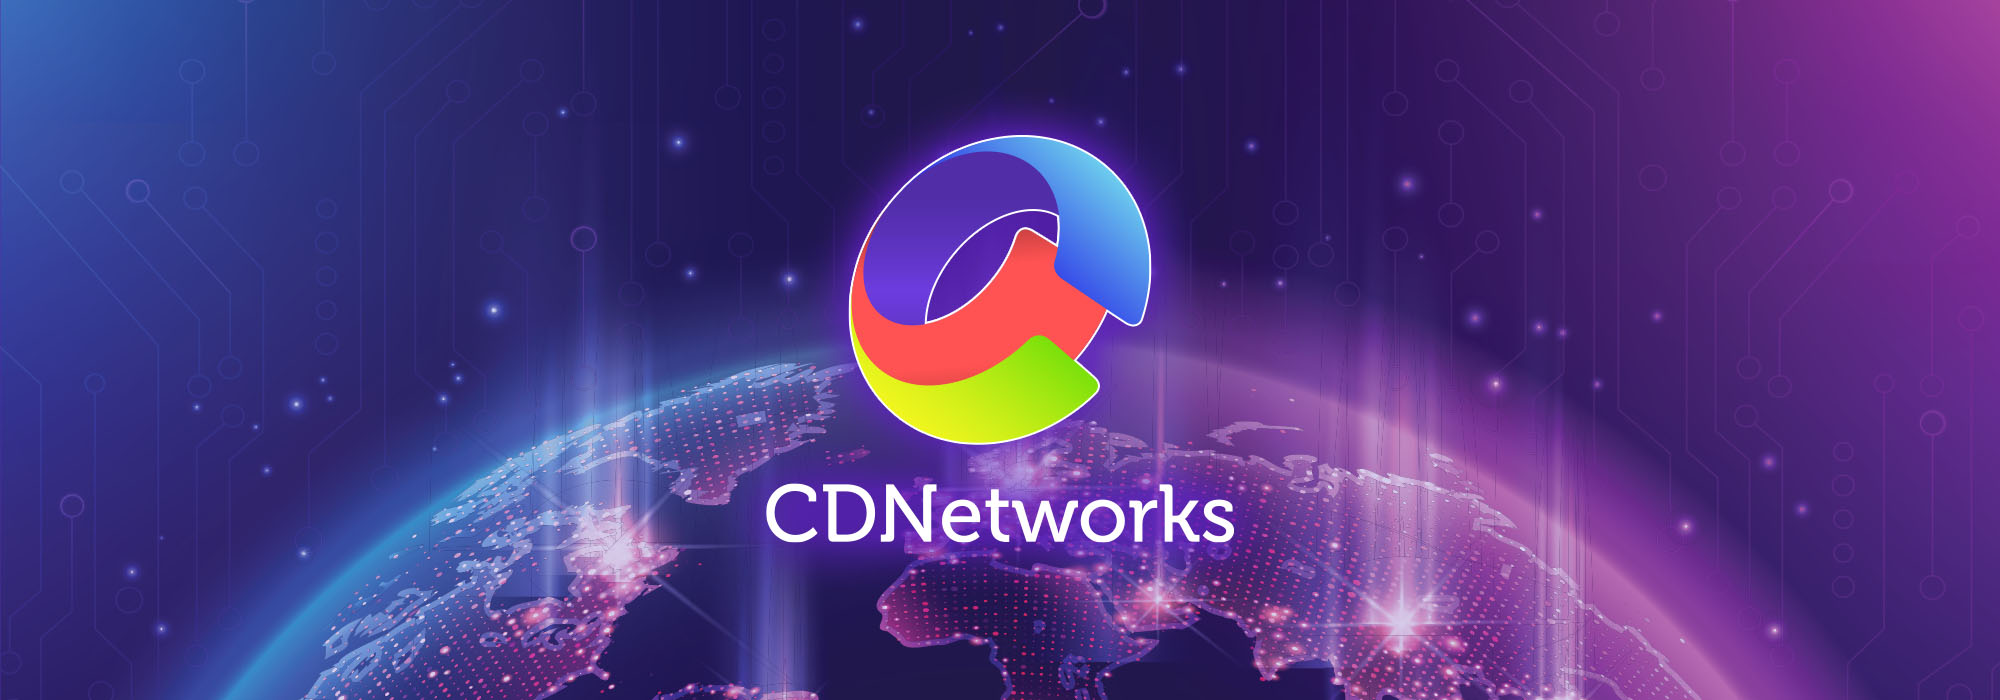 CDNetworks 旨在通过扩大本地设施和升级本地支持来增强越南的数字化转型